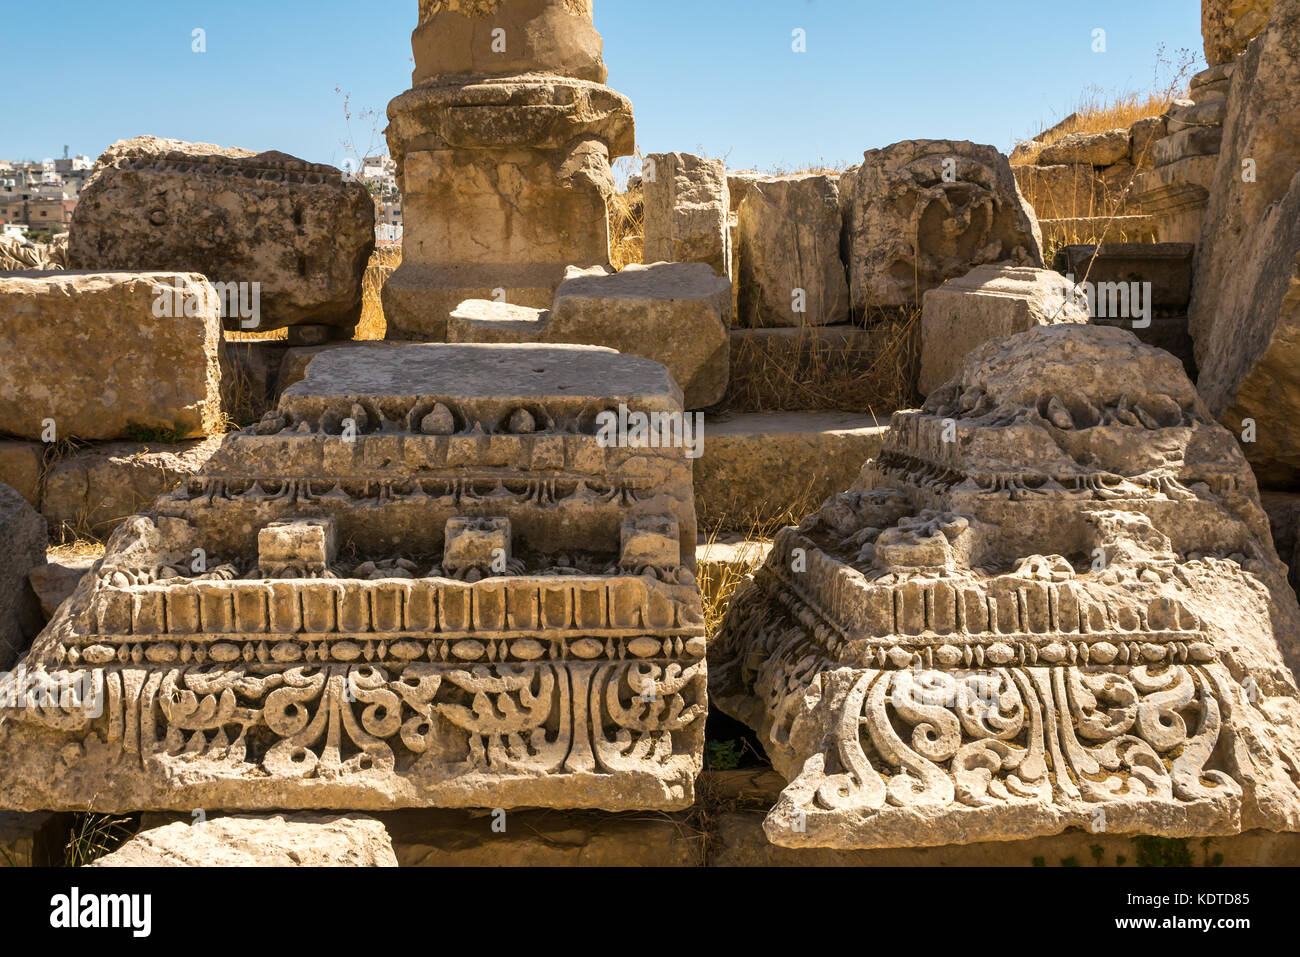 Close up dettaglio rovinato sculture in pietra, città romana di Jerash, antica Gerasa, sito archeologico nel nord della Giordania, Medio Oriente Foto Stock